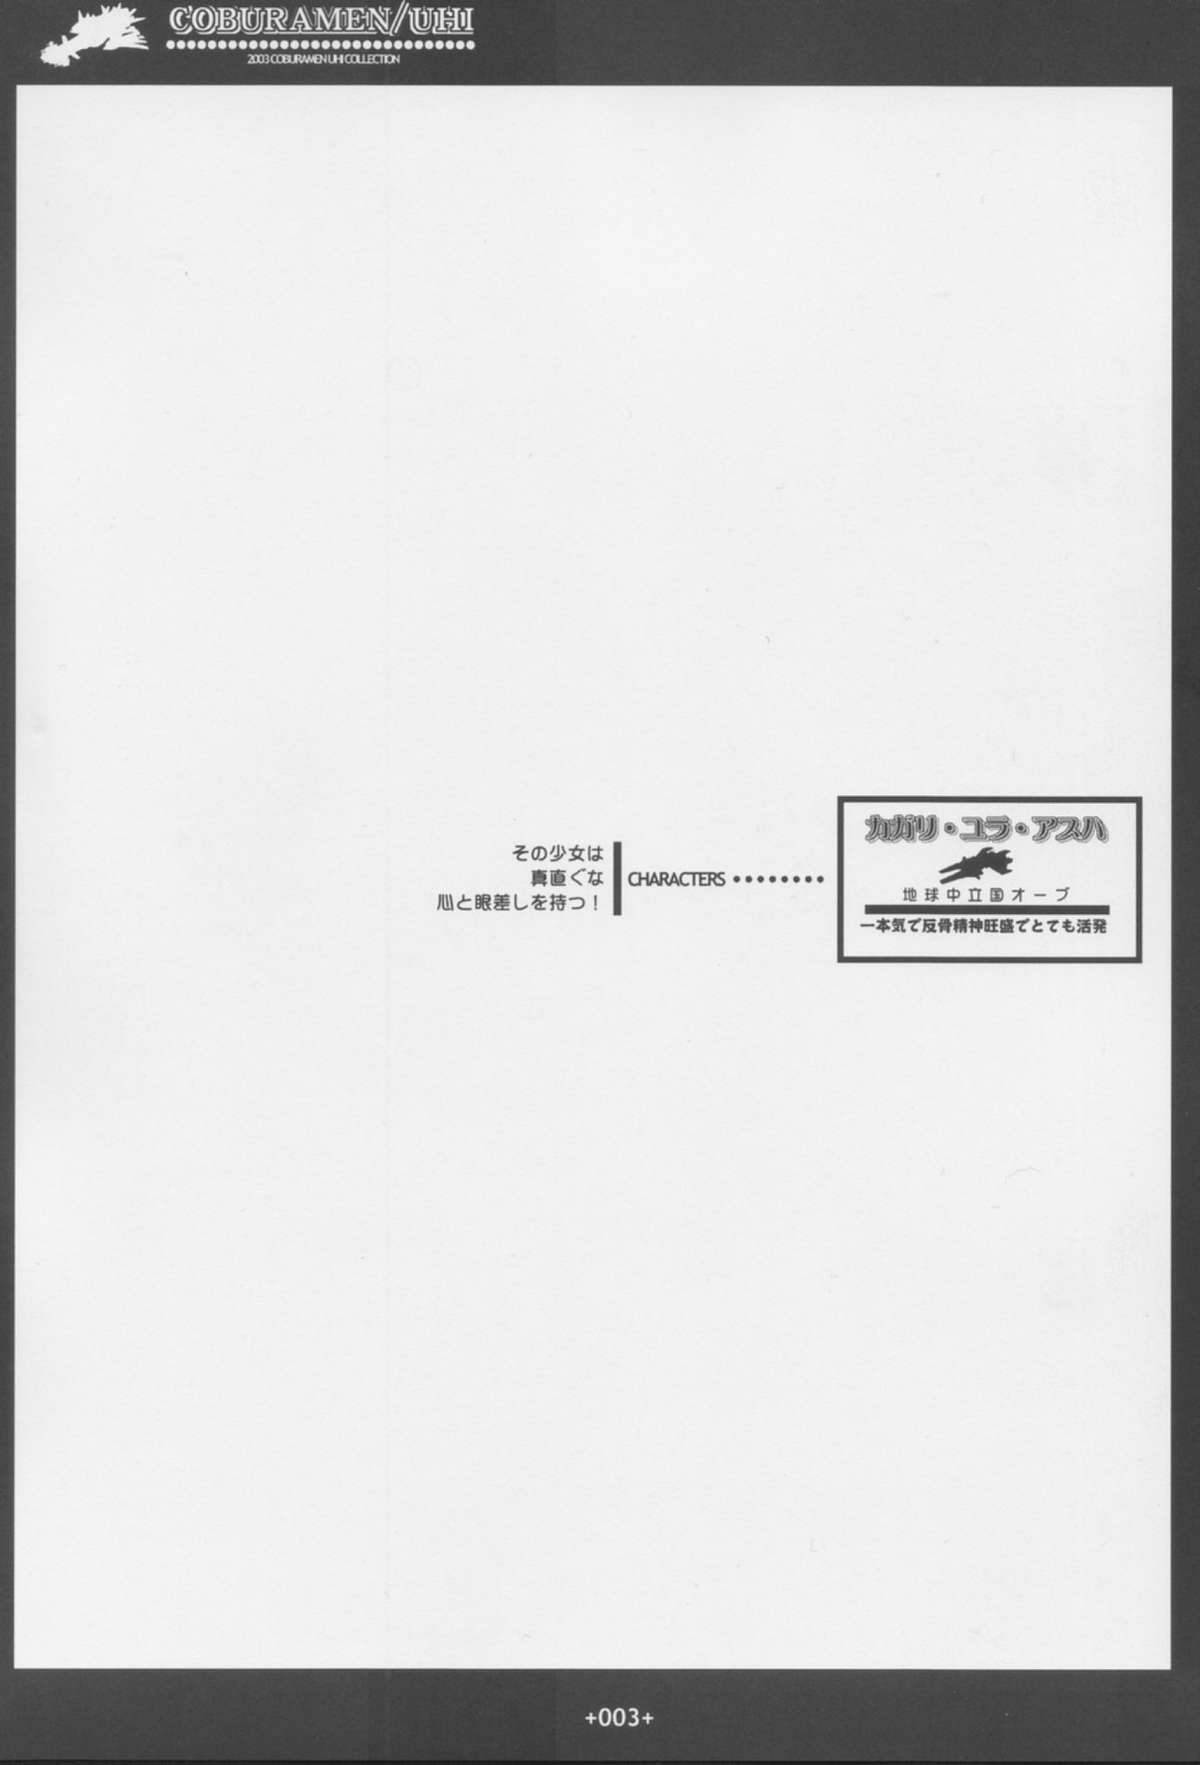 [Coburamenman (Uhhii)] GS (Gundam Seed) page 4 full